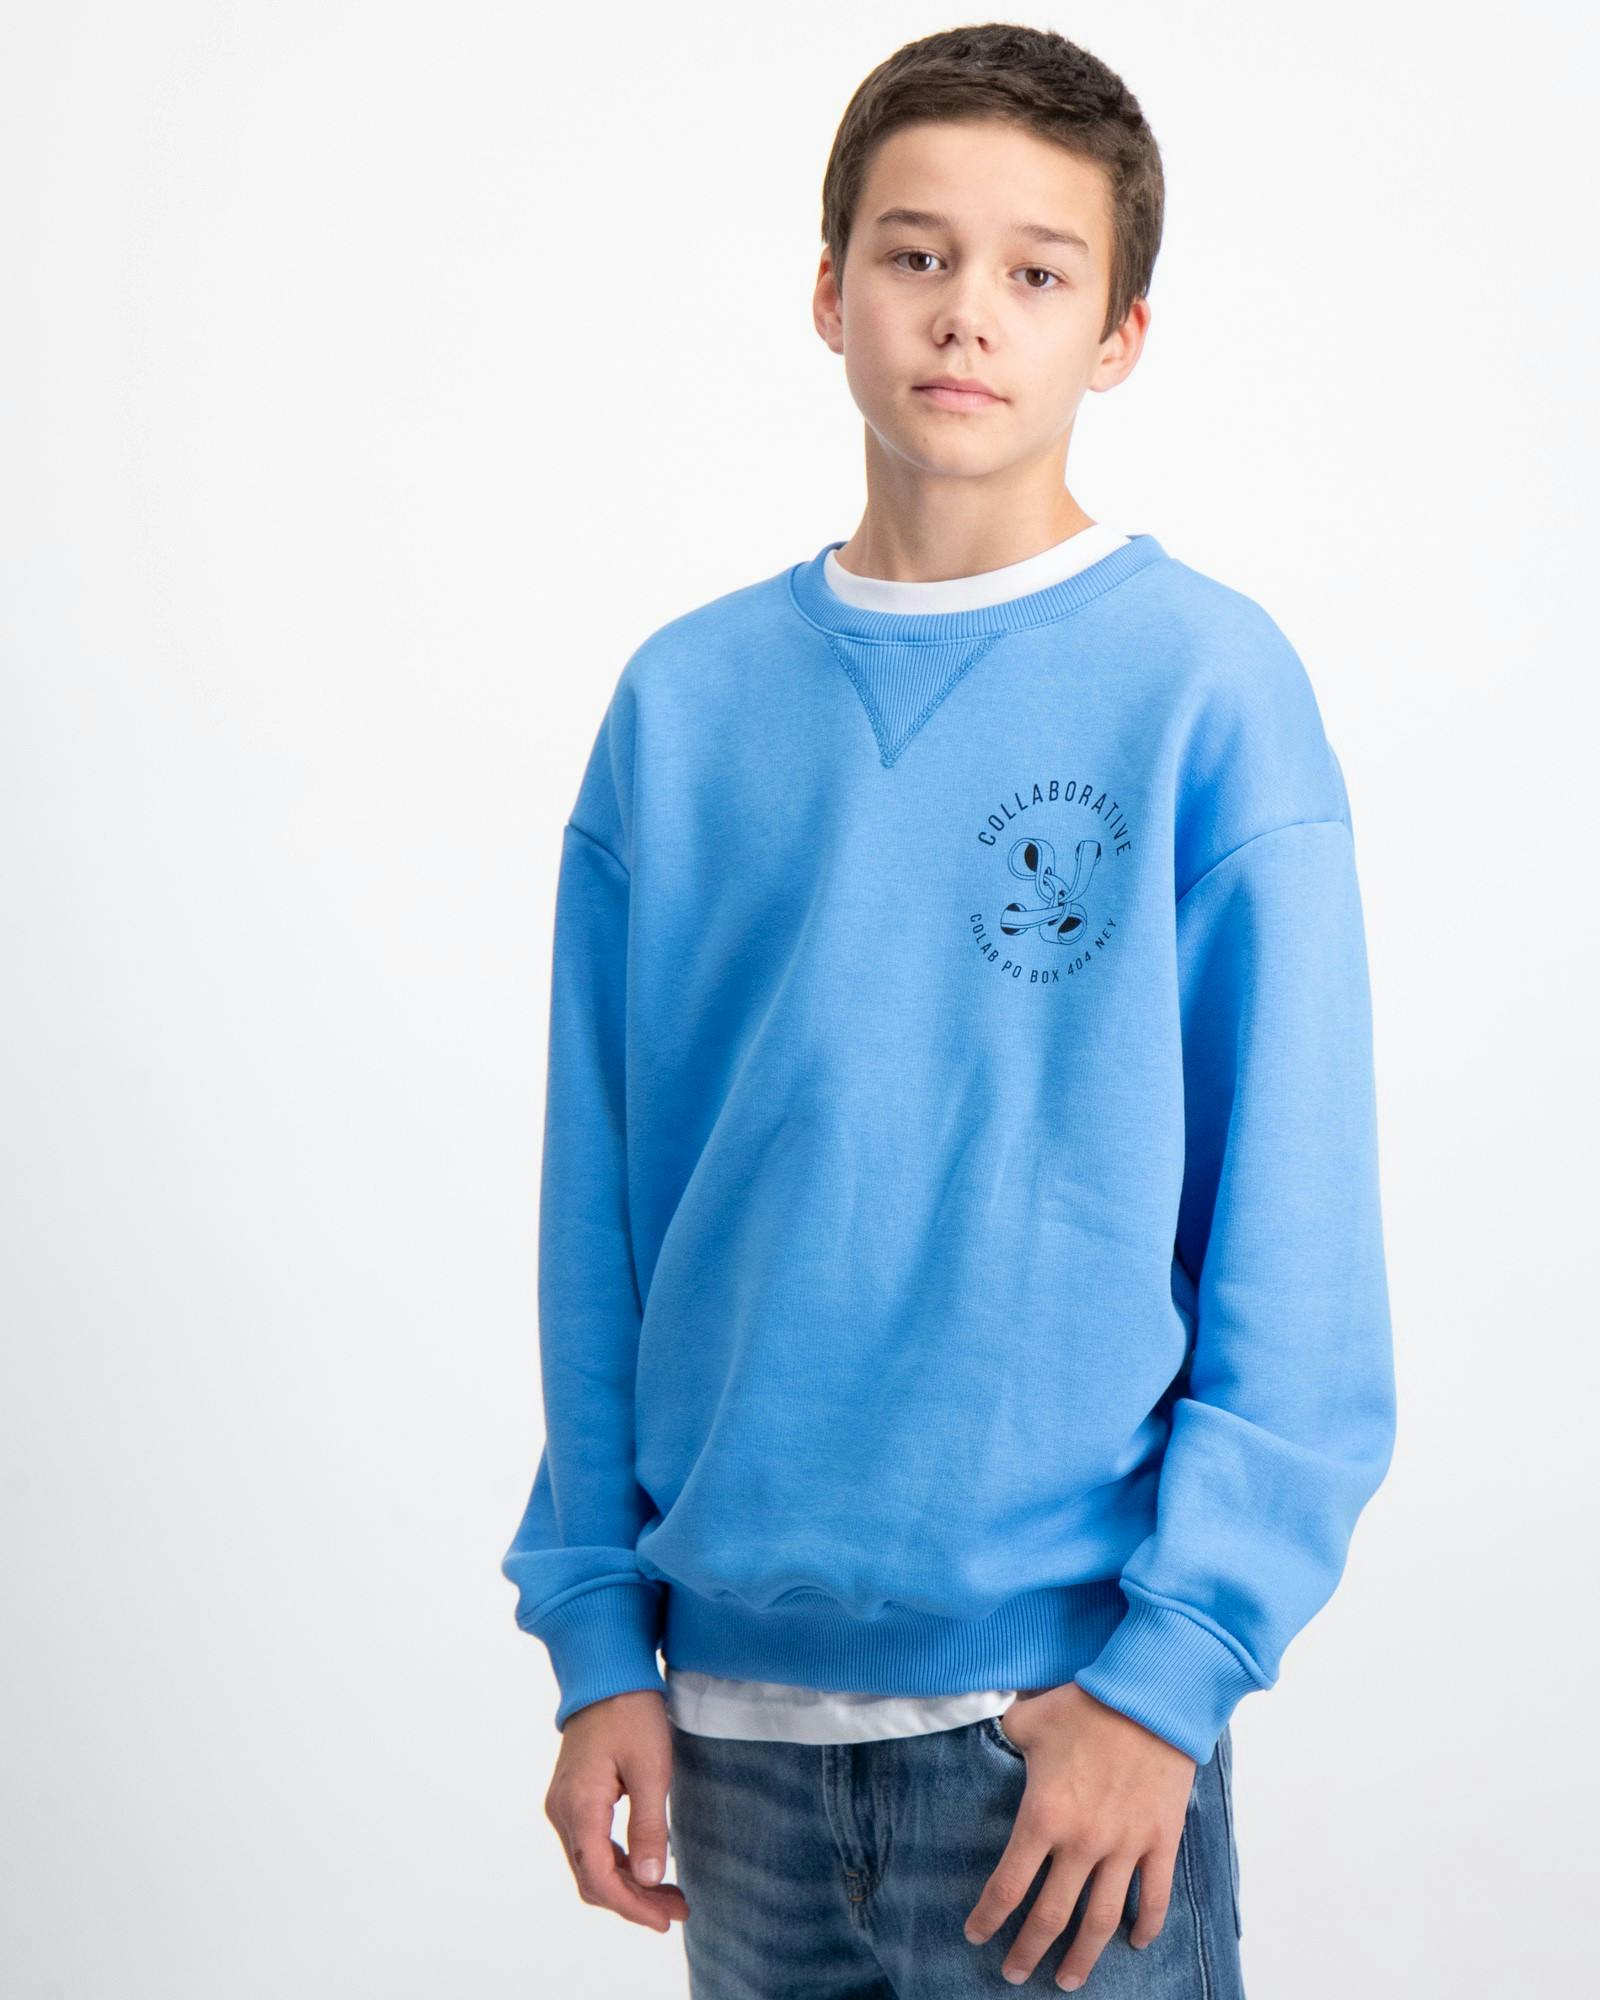 Blau SWEATSHIRT für Jungen Kids Store Brand 